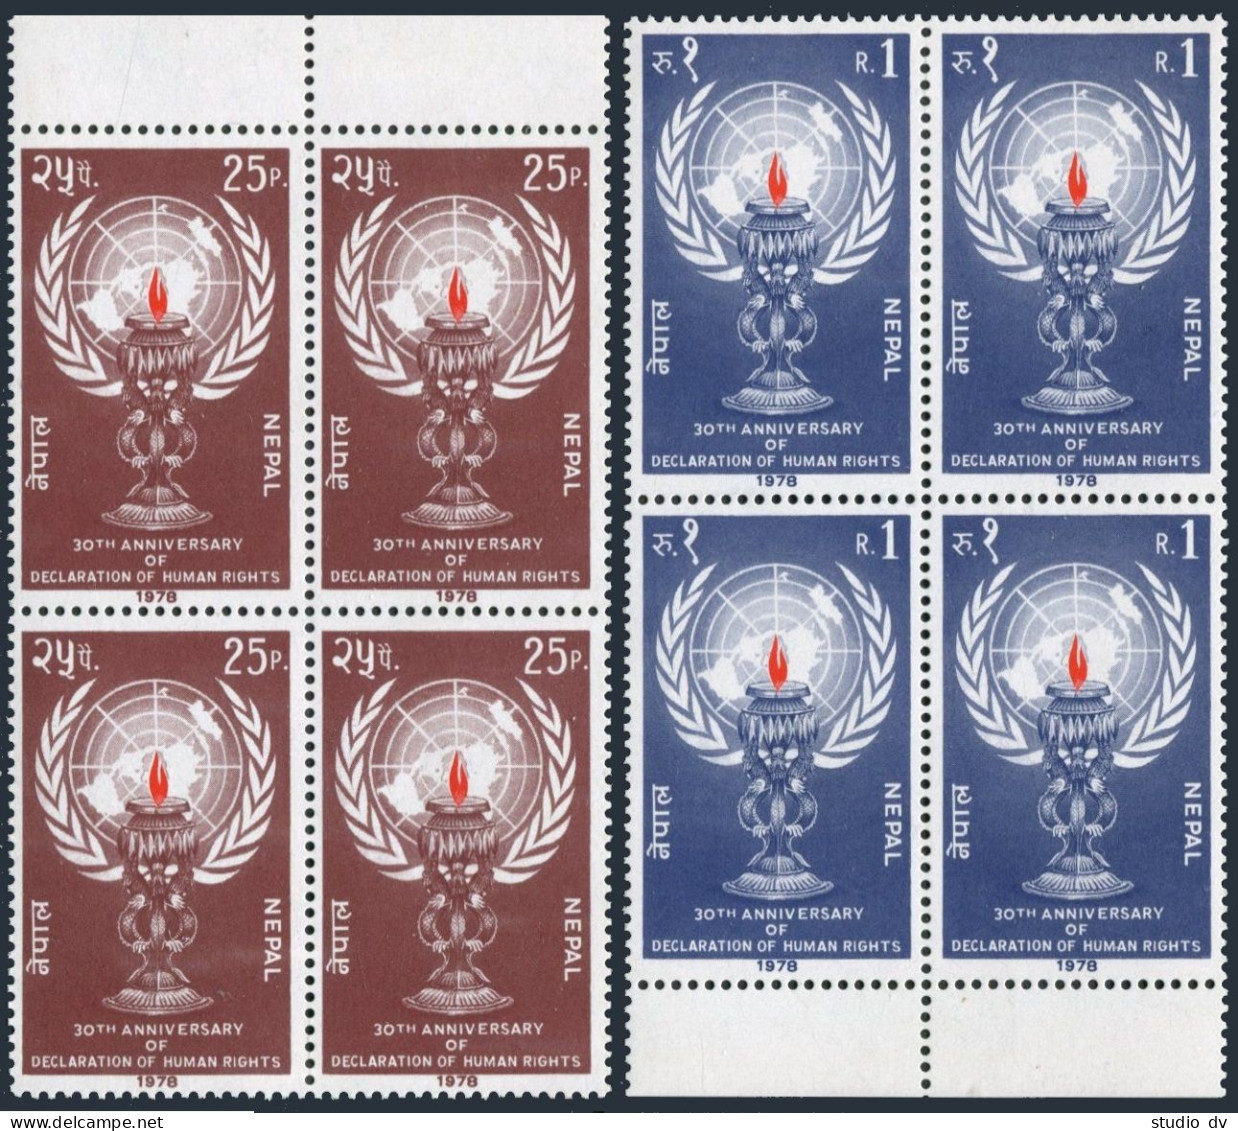 Nepal 350-351 Blocks/4,MNH.Mi 368-369.Declaration Of Human Rights,30th Ann.1978. - Nepal